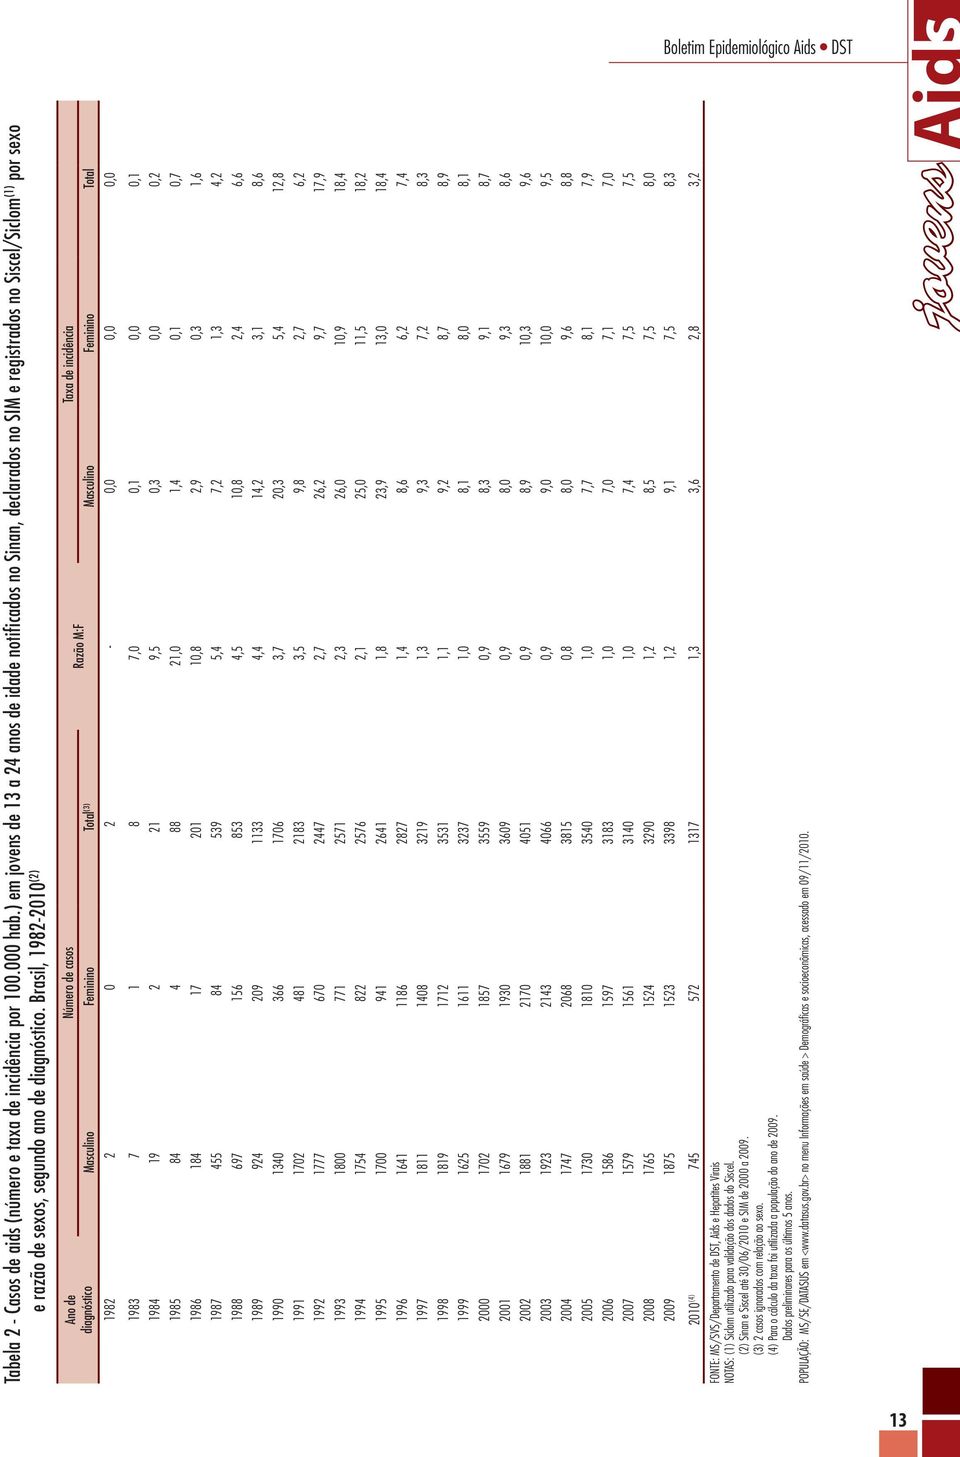 Brasil, 1982-2010 (2) Ano de diagnóstico Número de casos Taxa de incidência Razão M:F Masculino Feminino Total (3) Masculino Feminino Total 1982 2 0 2-0,0 0,0 0,0 1983 7 1 8 7,0 0,1 0,0 0,1 1984 19 2